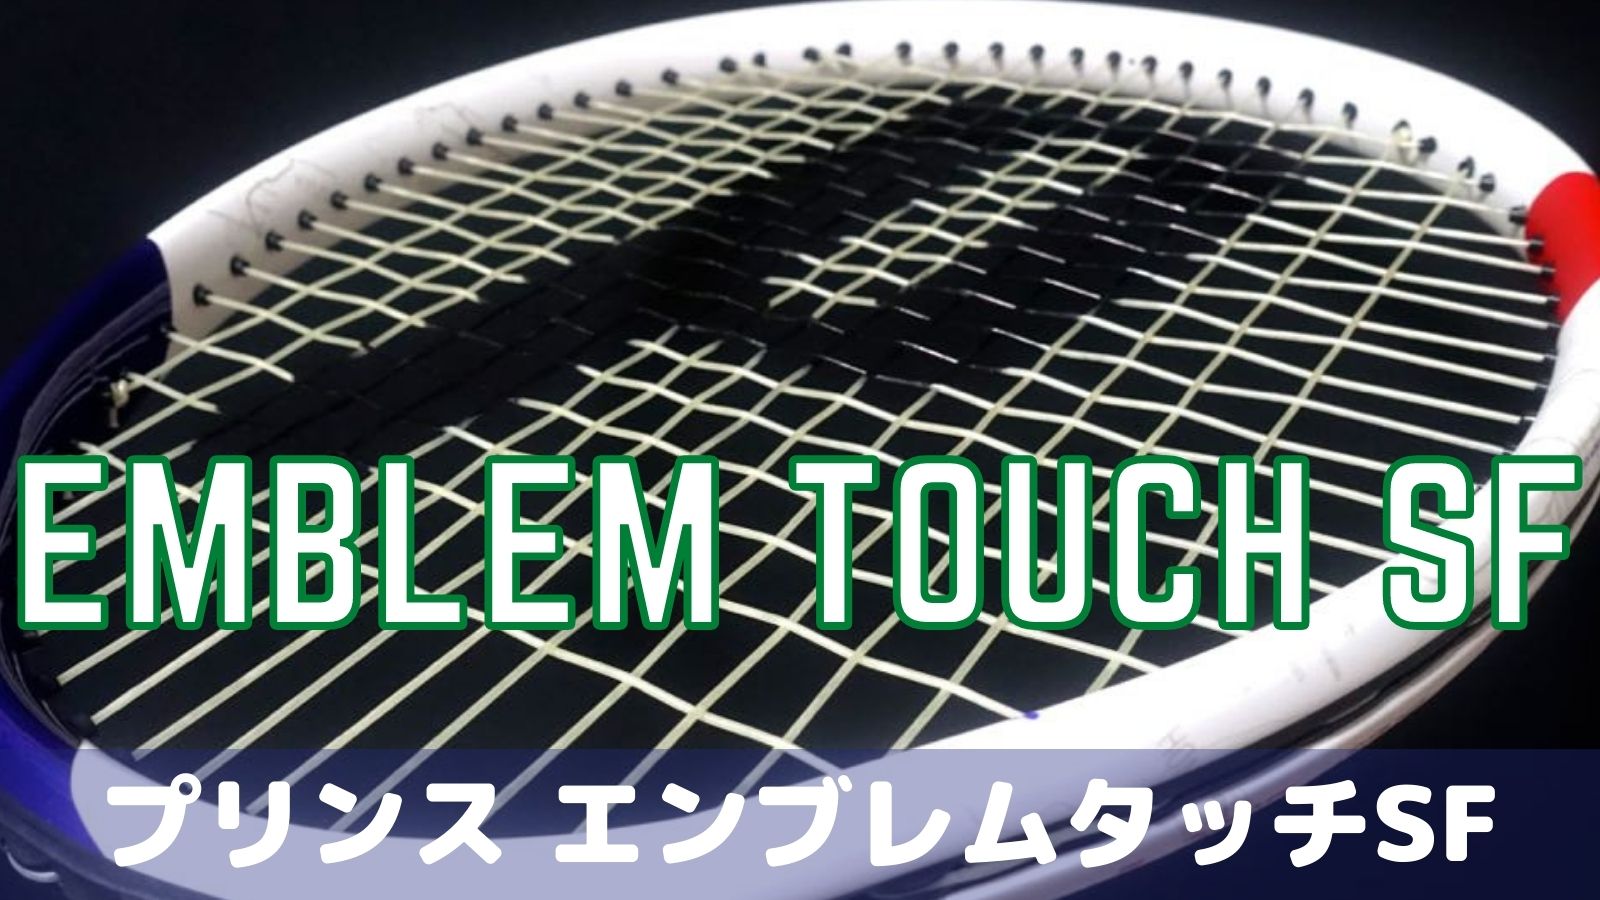 テニスラケット ガッド ロール プリンス prince  TOUR XT18